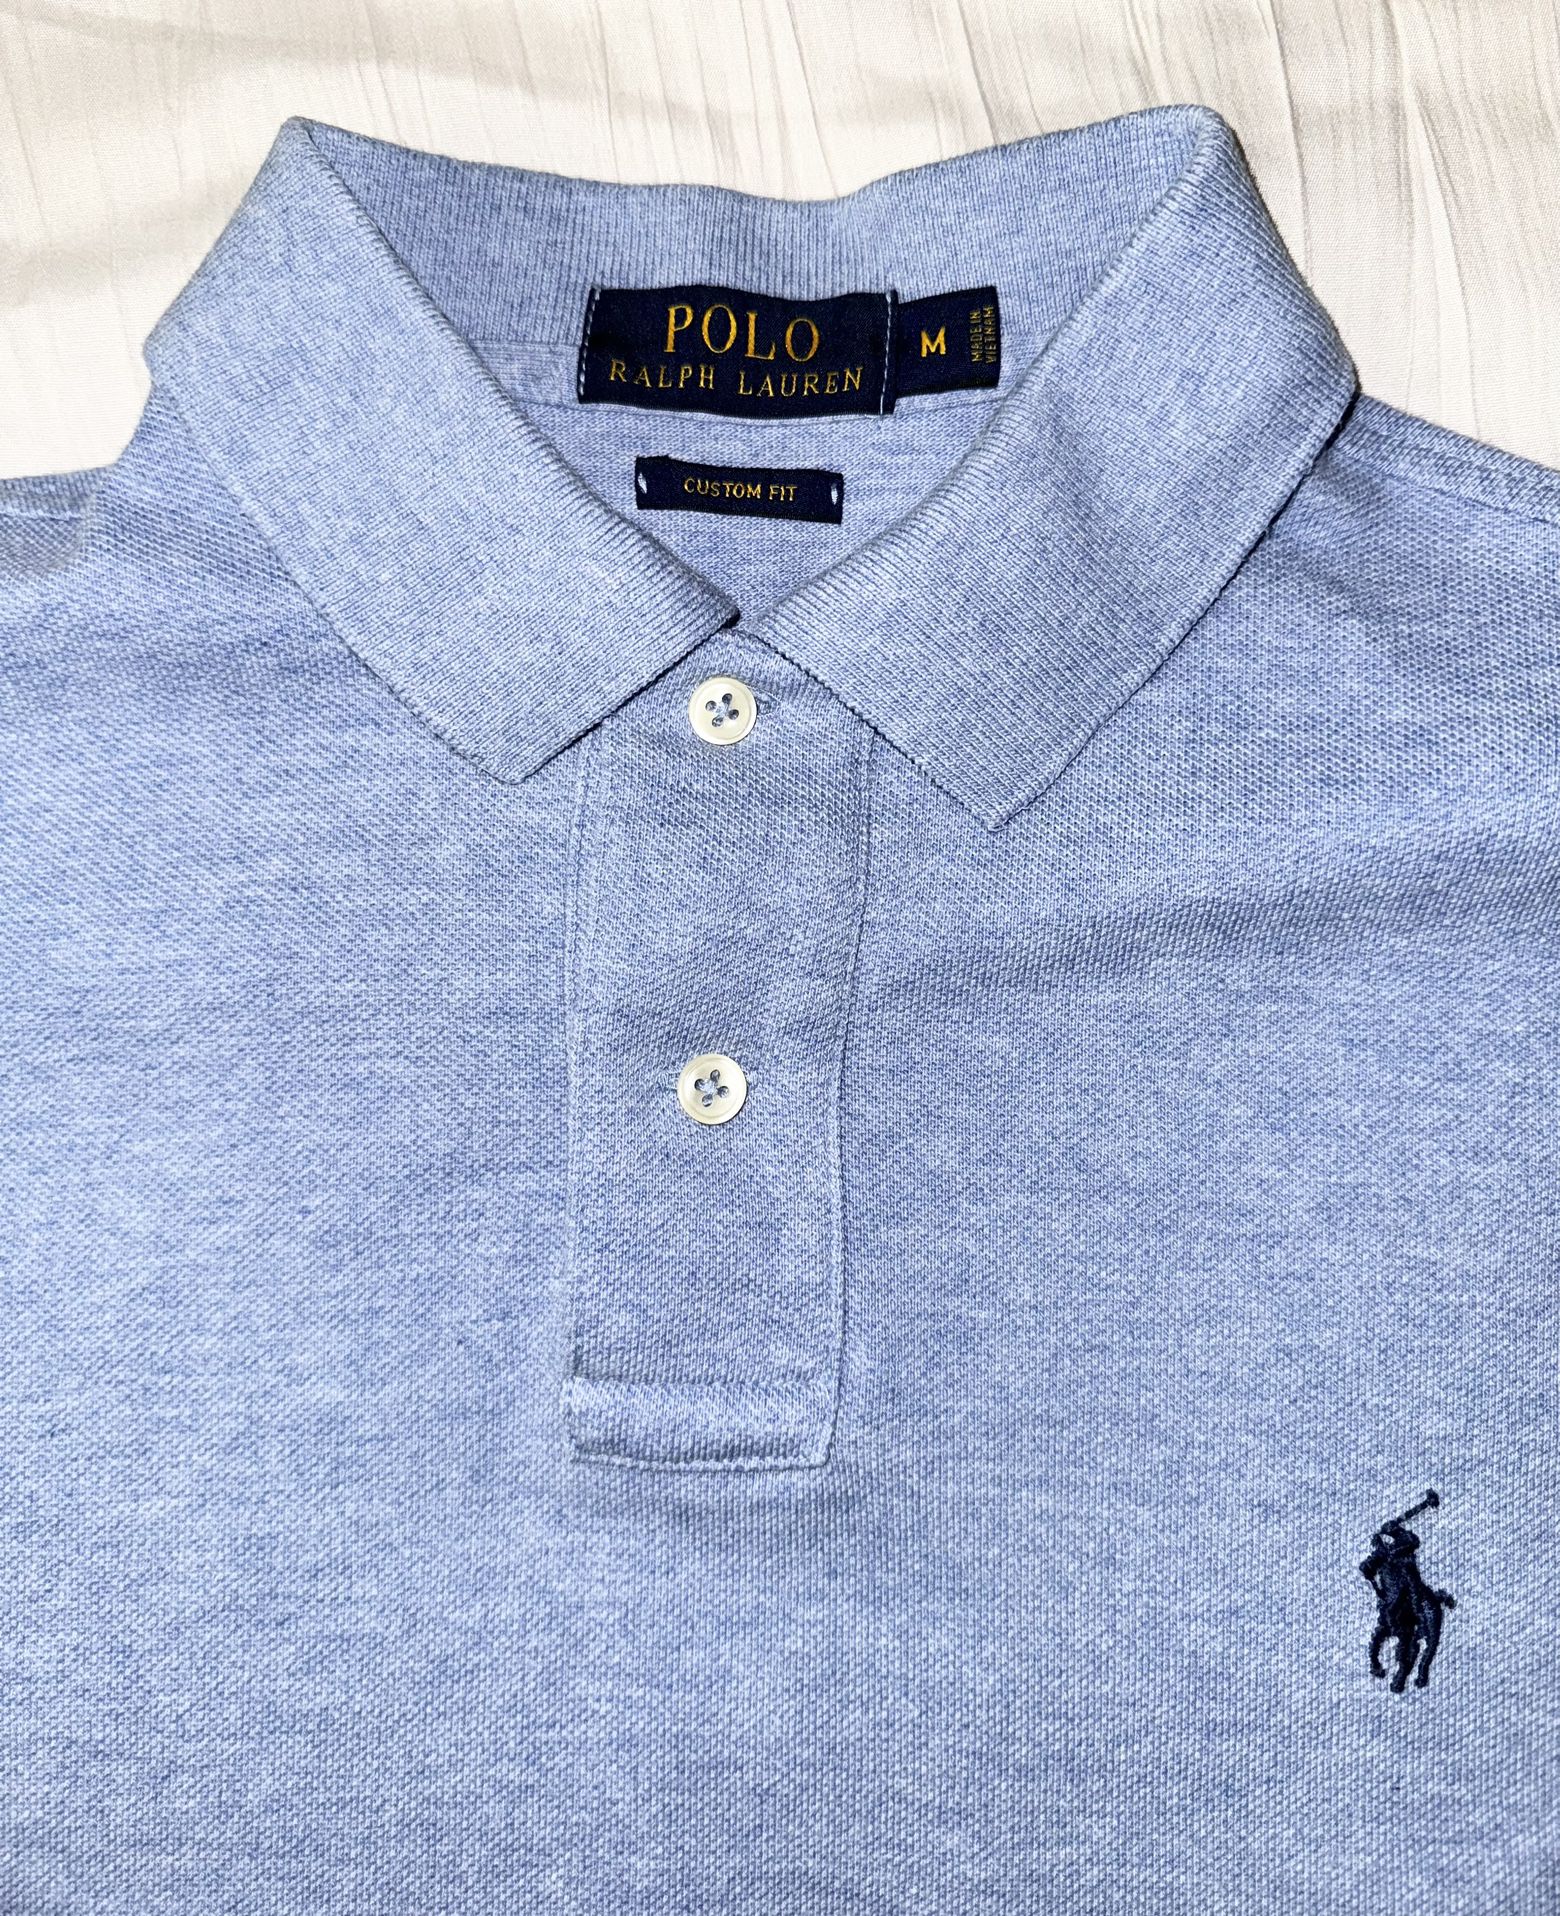 Men's Ralph Lauren Polo Shirt Size M